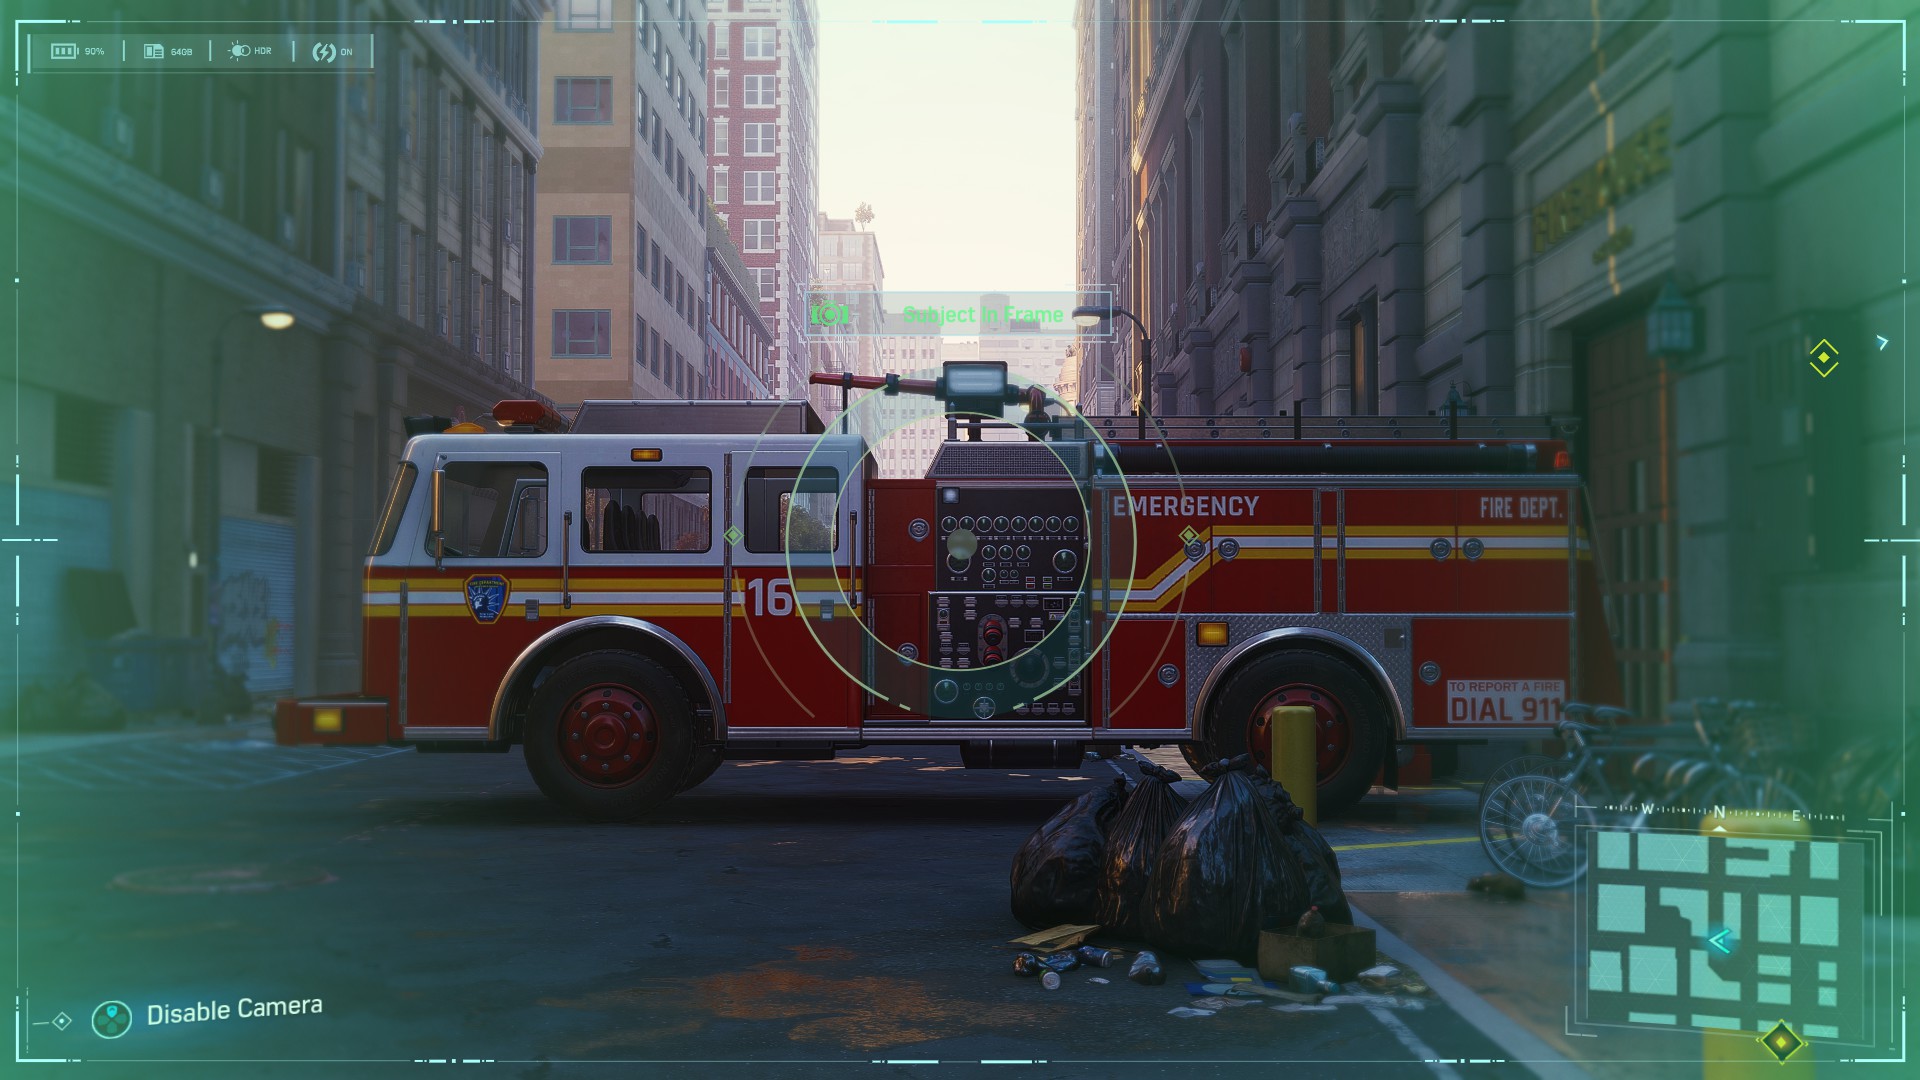 Spider-Man Secret Photo Op of a fire engine